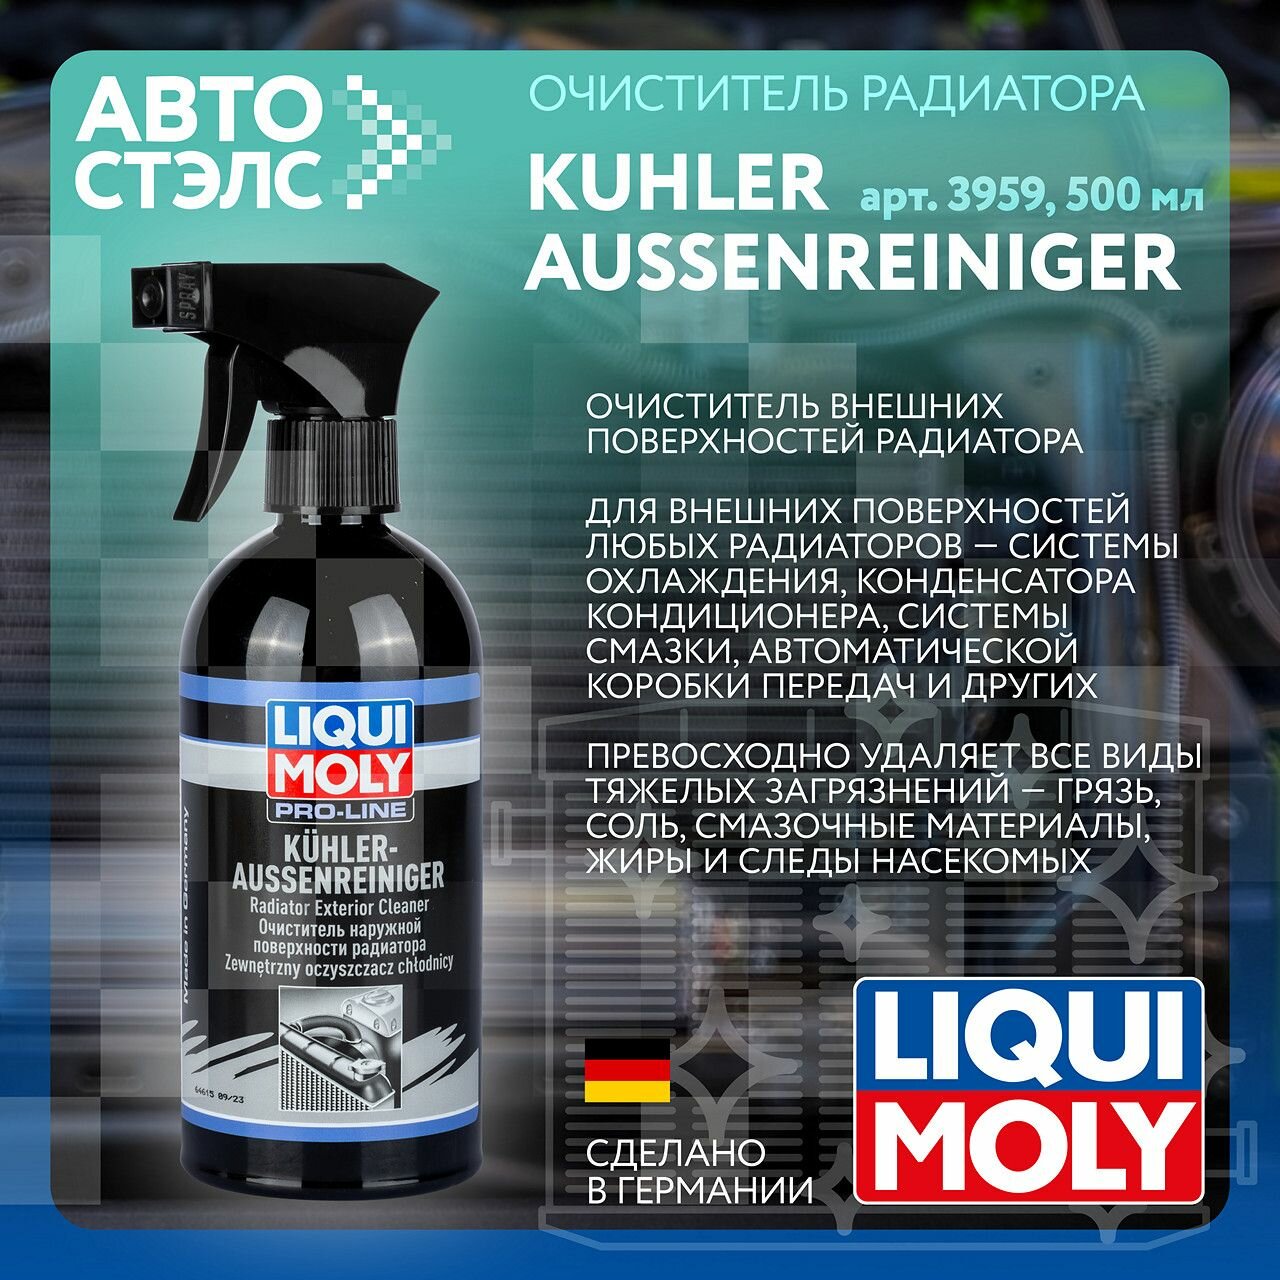 Очиститель наружной поверхности радиатора LIQUI MOLY Kuhler Aussenreiniger 500 мл